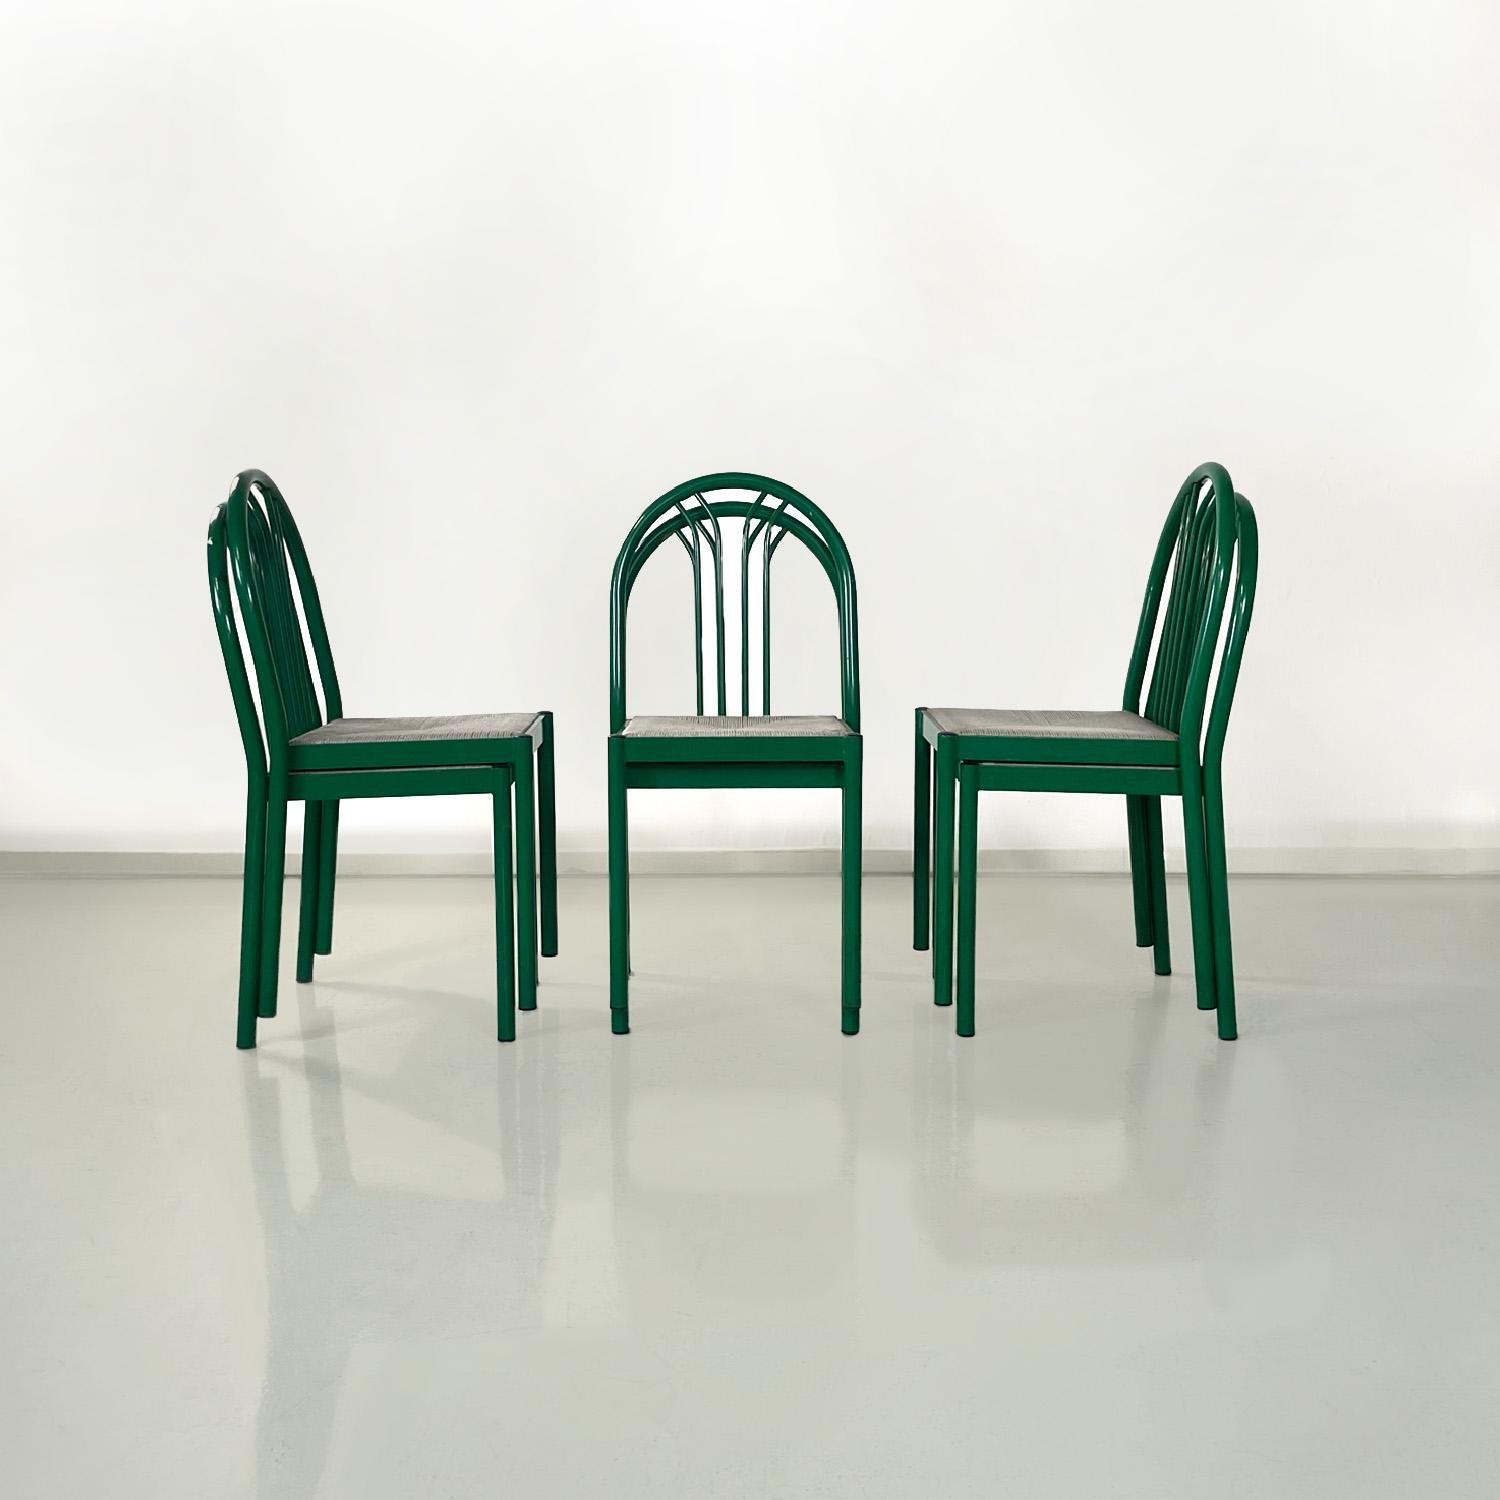 Chaises modernes italiennes empilables en métal tubulaire vert et en paille grise, années 1980
Ensemble de six chaises avec structure en métal et paille. La structure est en tubes métalliques peints en vert. Quatre tiges métalliques placées